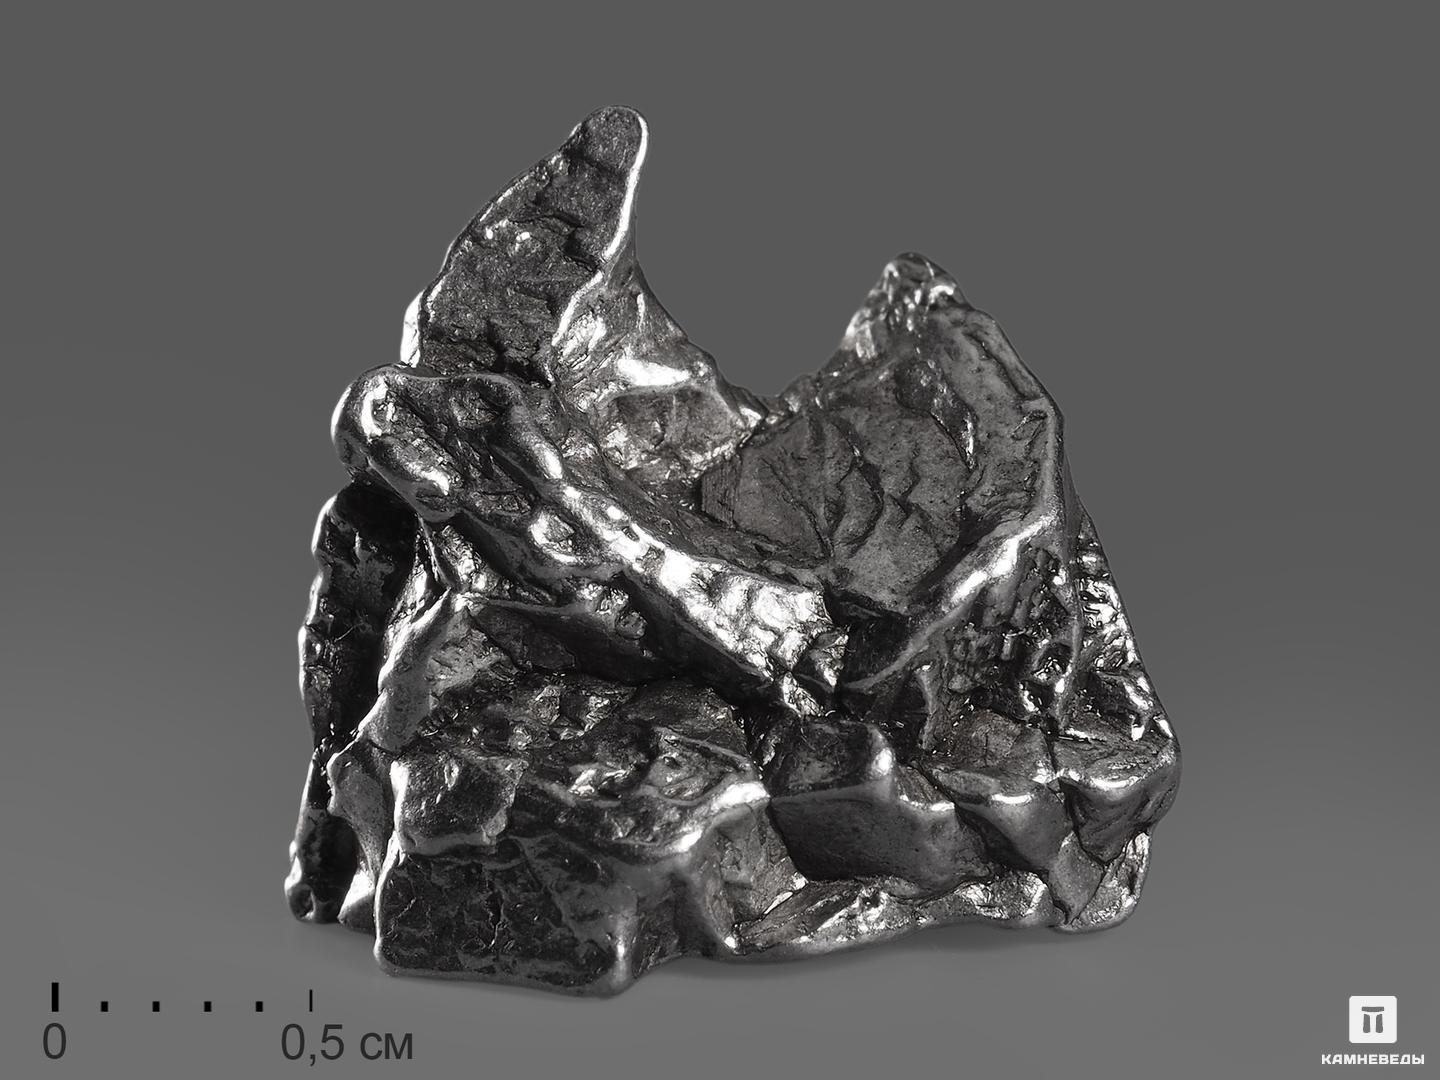 Метеорит Кампо-дель-Сьело, осколок 2-3,5 см (8-10 г) метеорит кампо дель сьело осколок 2 3 5 см 8 10 г